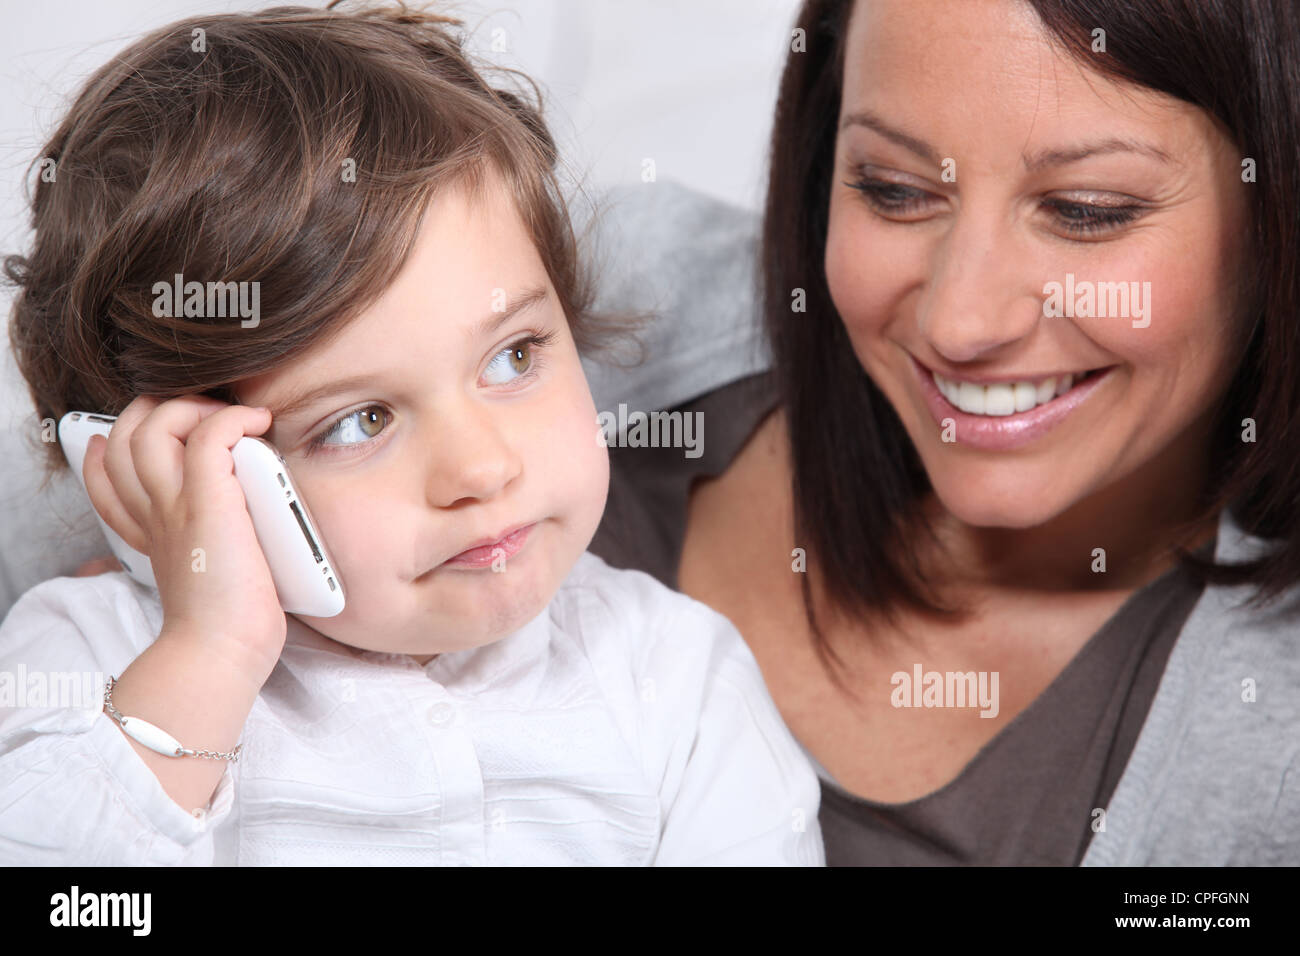 Мамин телефон маме. Мама с телефоном. Фото с маминого телефона. Картинки на телефон мама с детьми. Ребенок играющий и мама с телефоном.